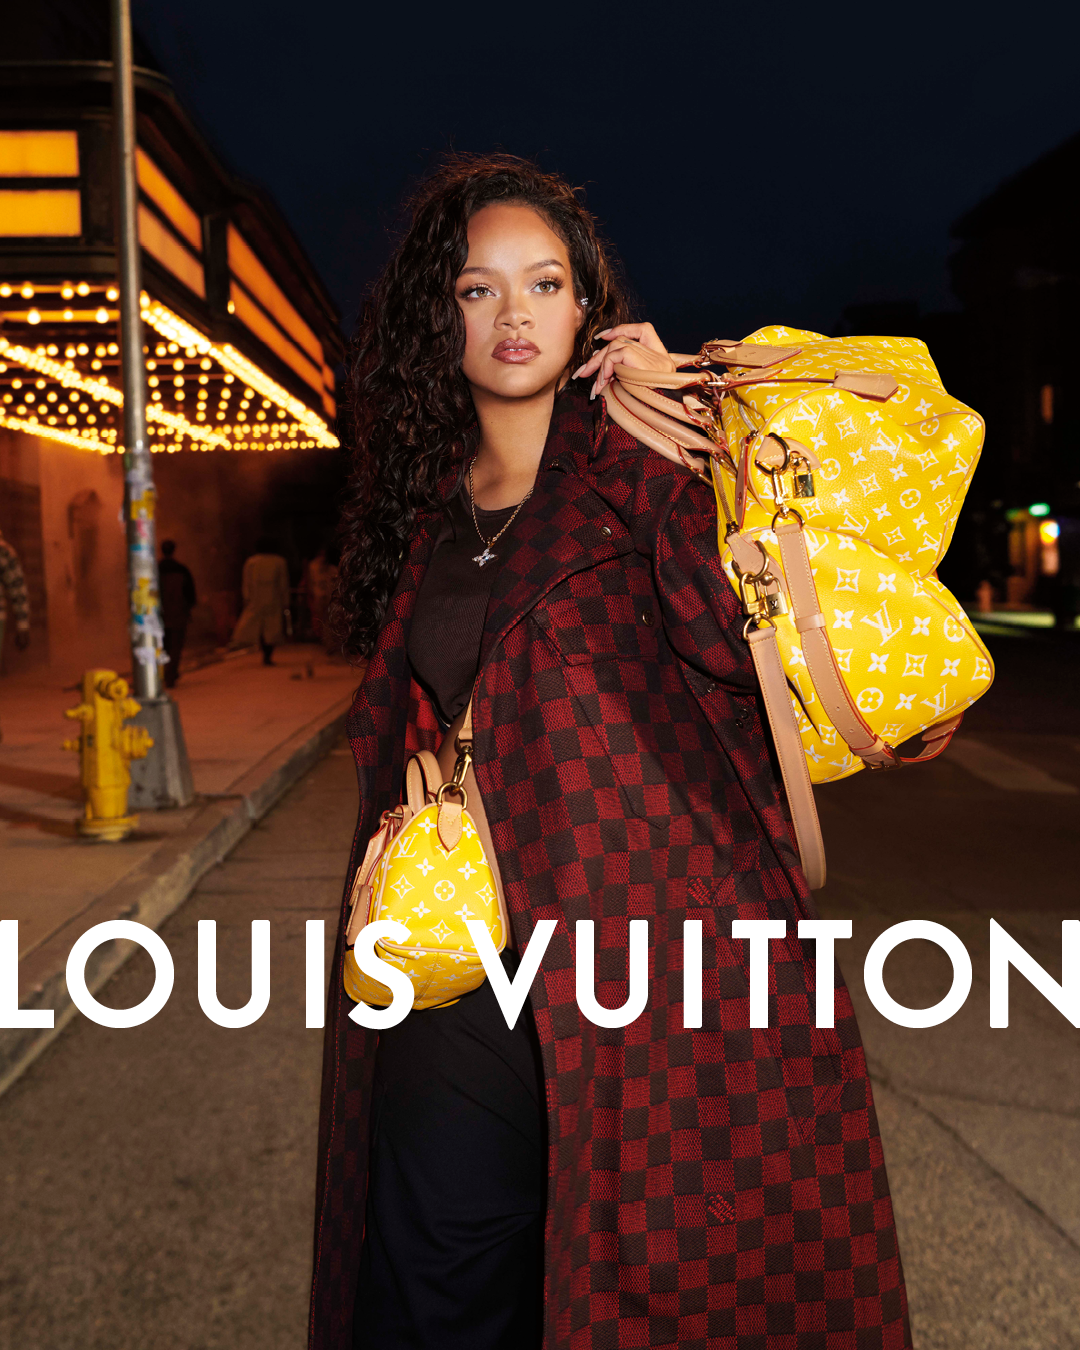 Louis Vuitton Generation V F/W 2022 Campaign (Louis Vuitton)